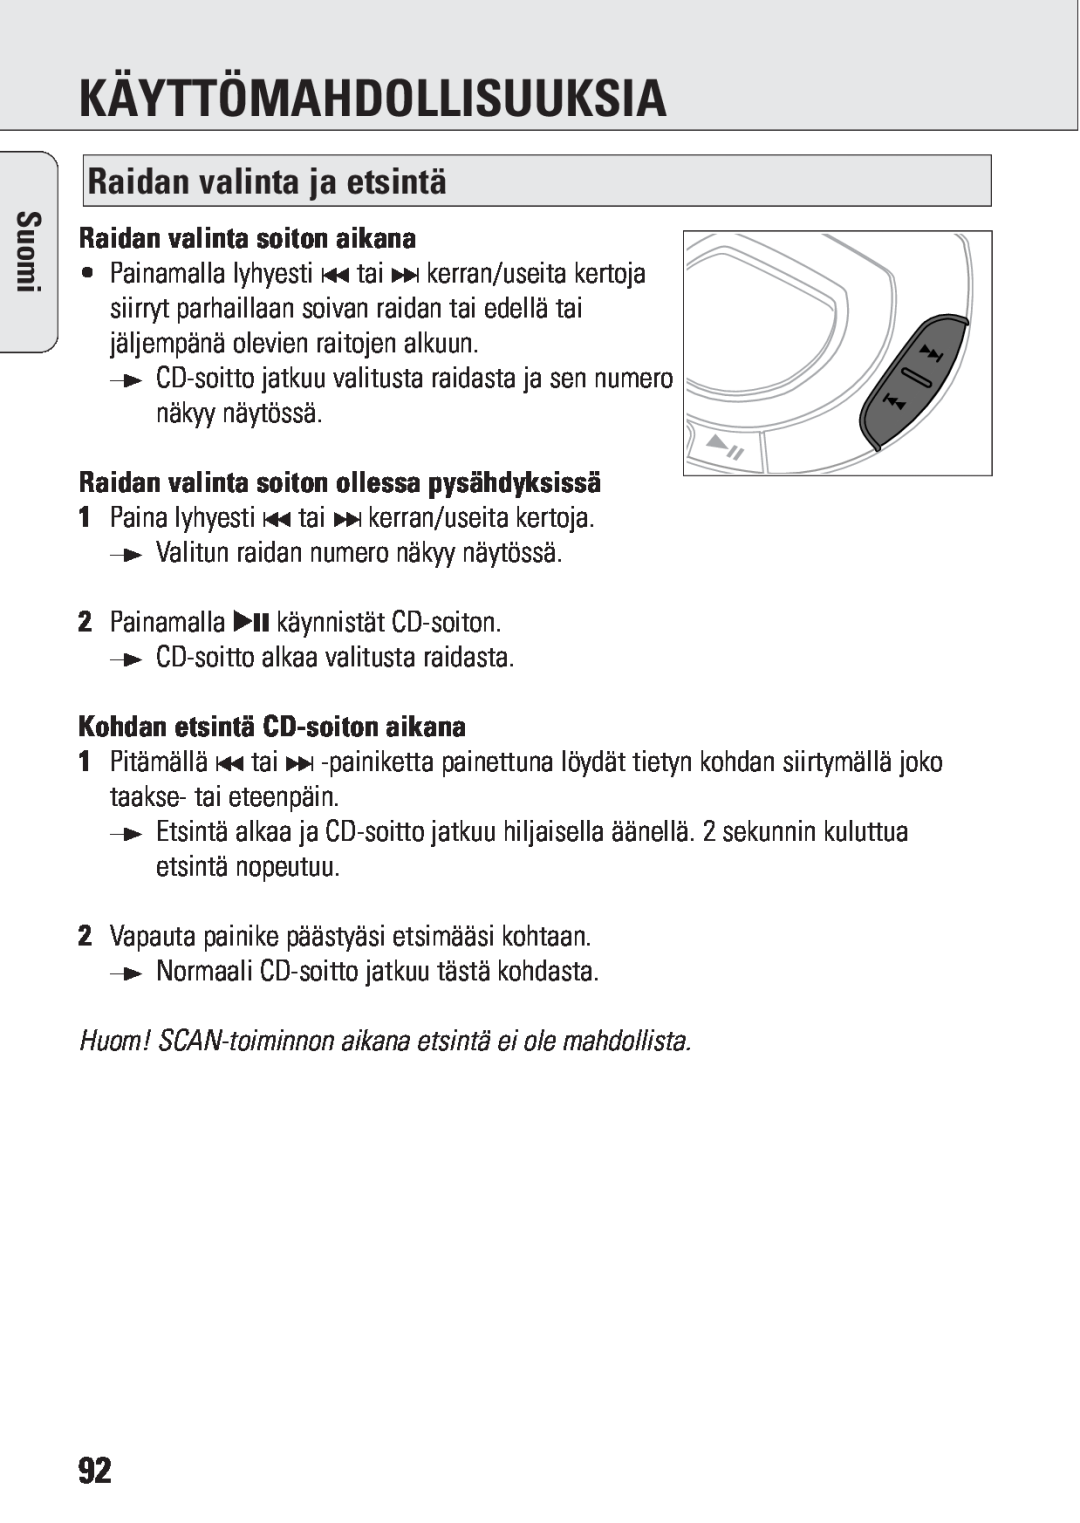 Philips ACT 7583 manual Käyttömahdollisuuksia, Raidan valinta ja etsintä, Raidan valinta soiton aikana, Suomi 